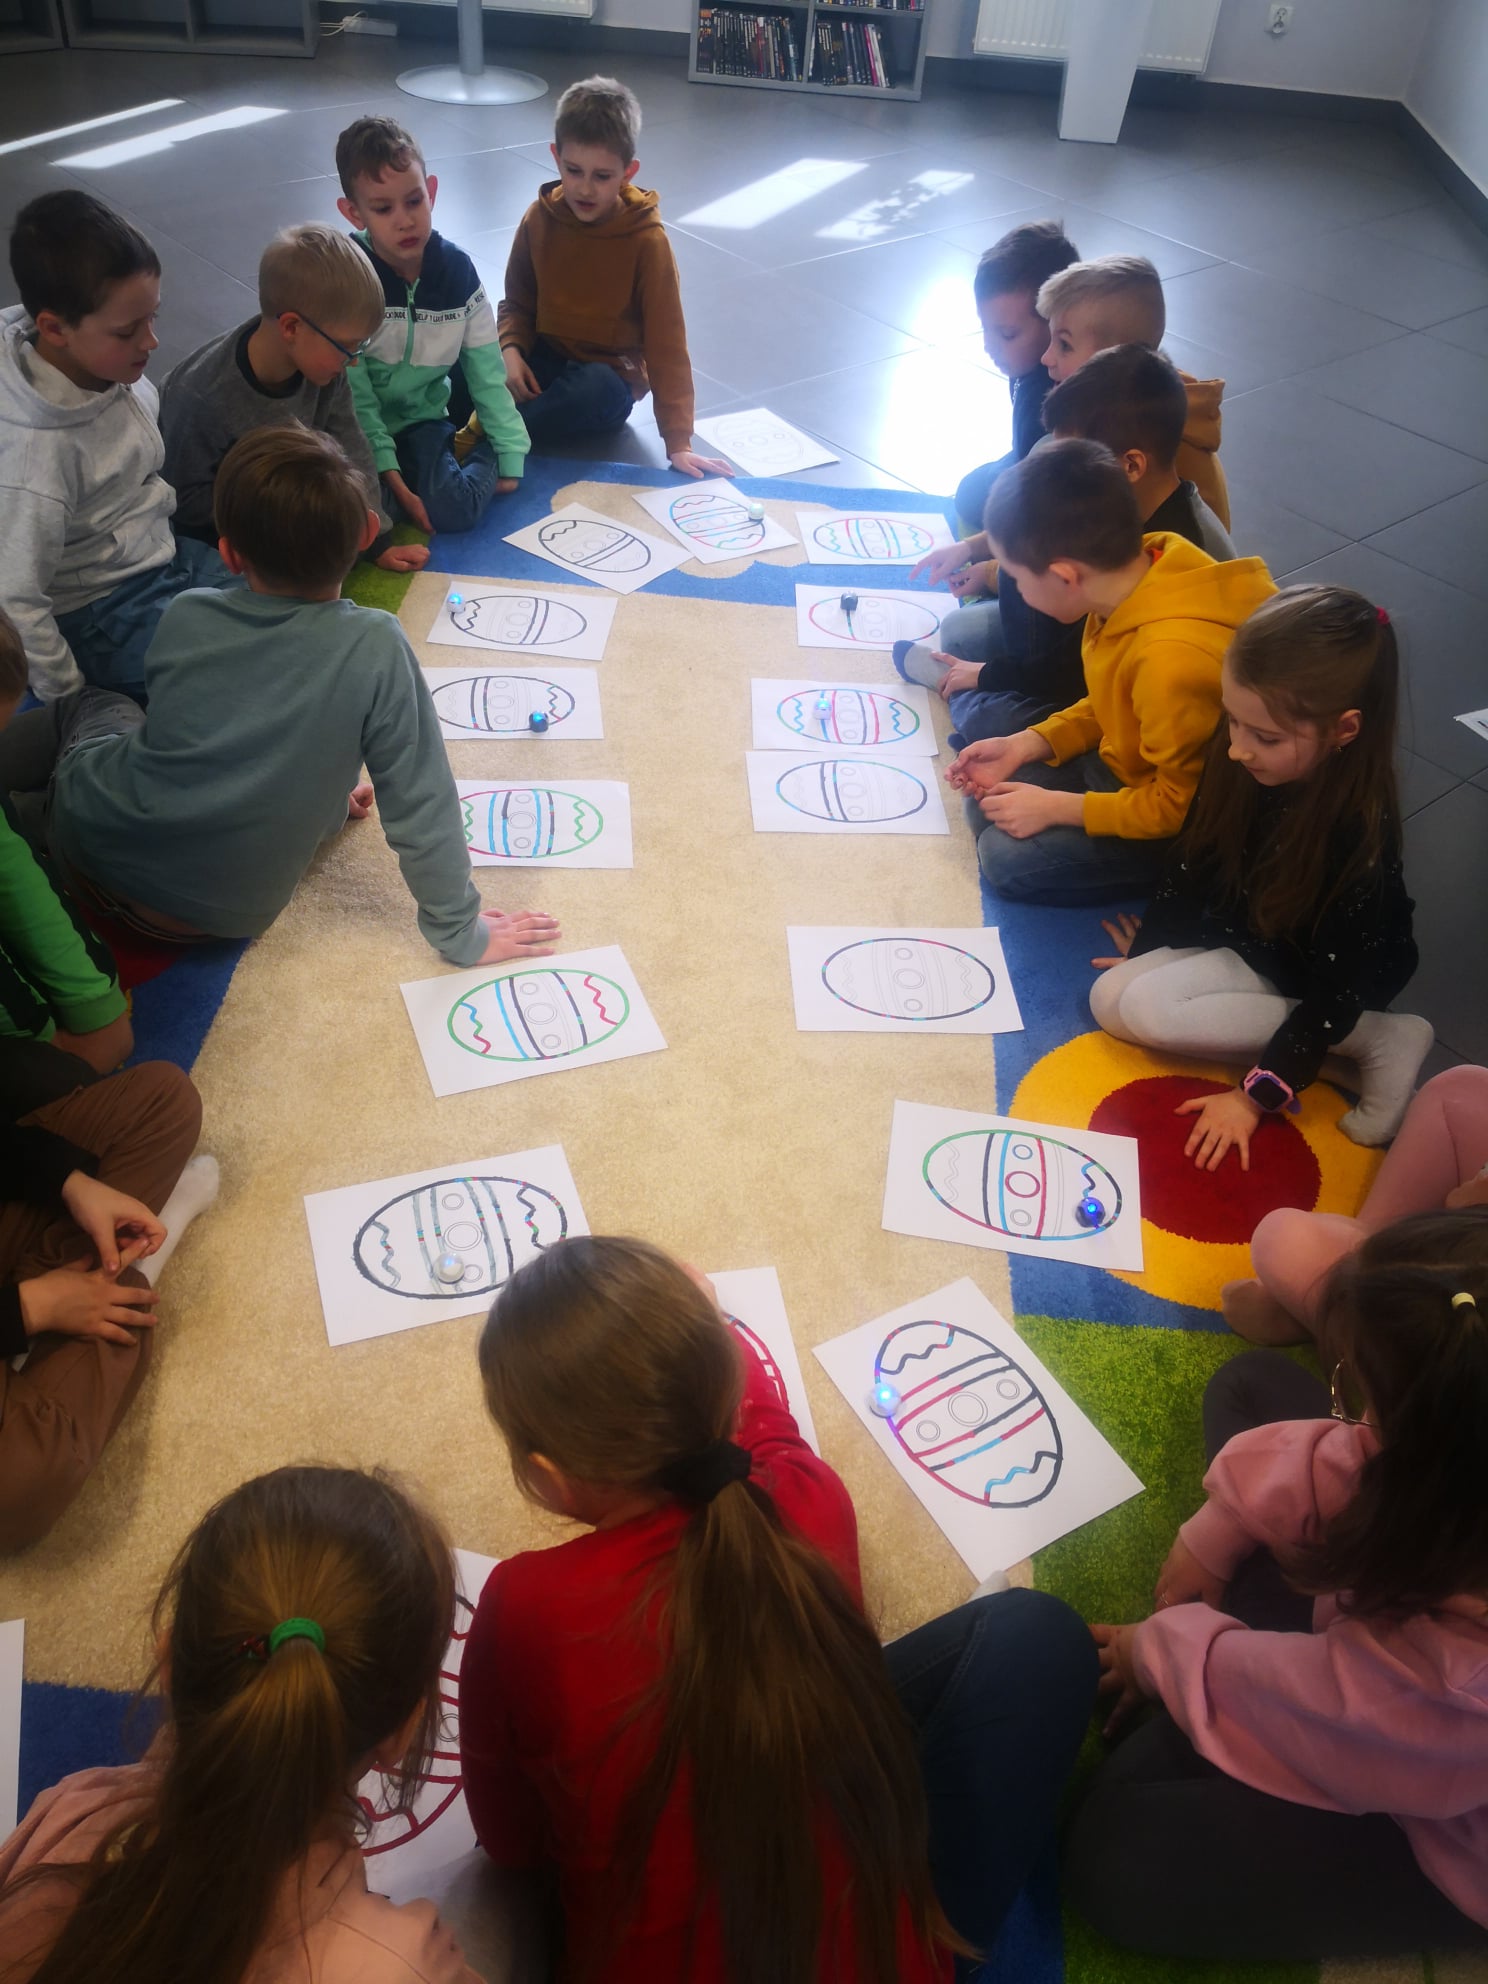 na dywanie w mediatece w kółku siedzi 15 dzieci, przed nimi leżą kartki a4 z narysowanymi trasami dla ozobota w kształcie wielkanocnej pisanki